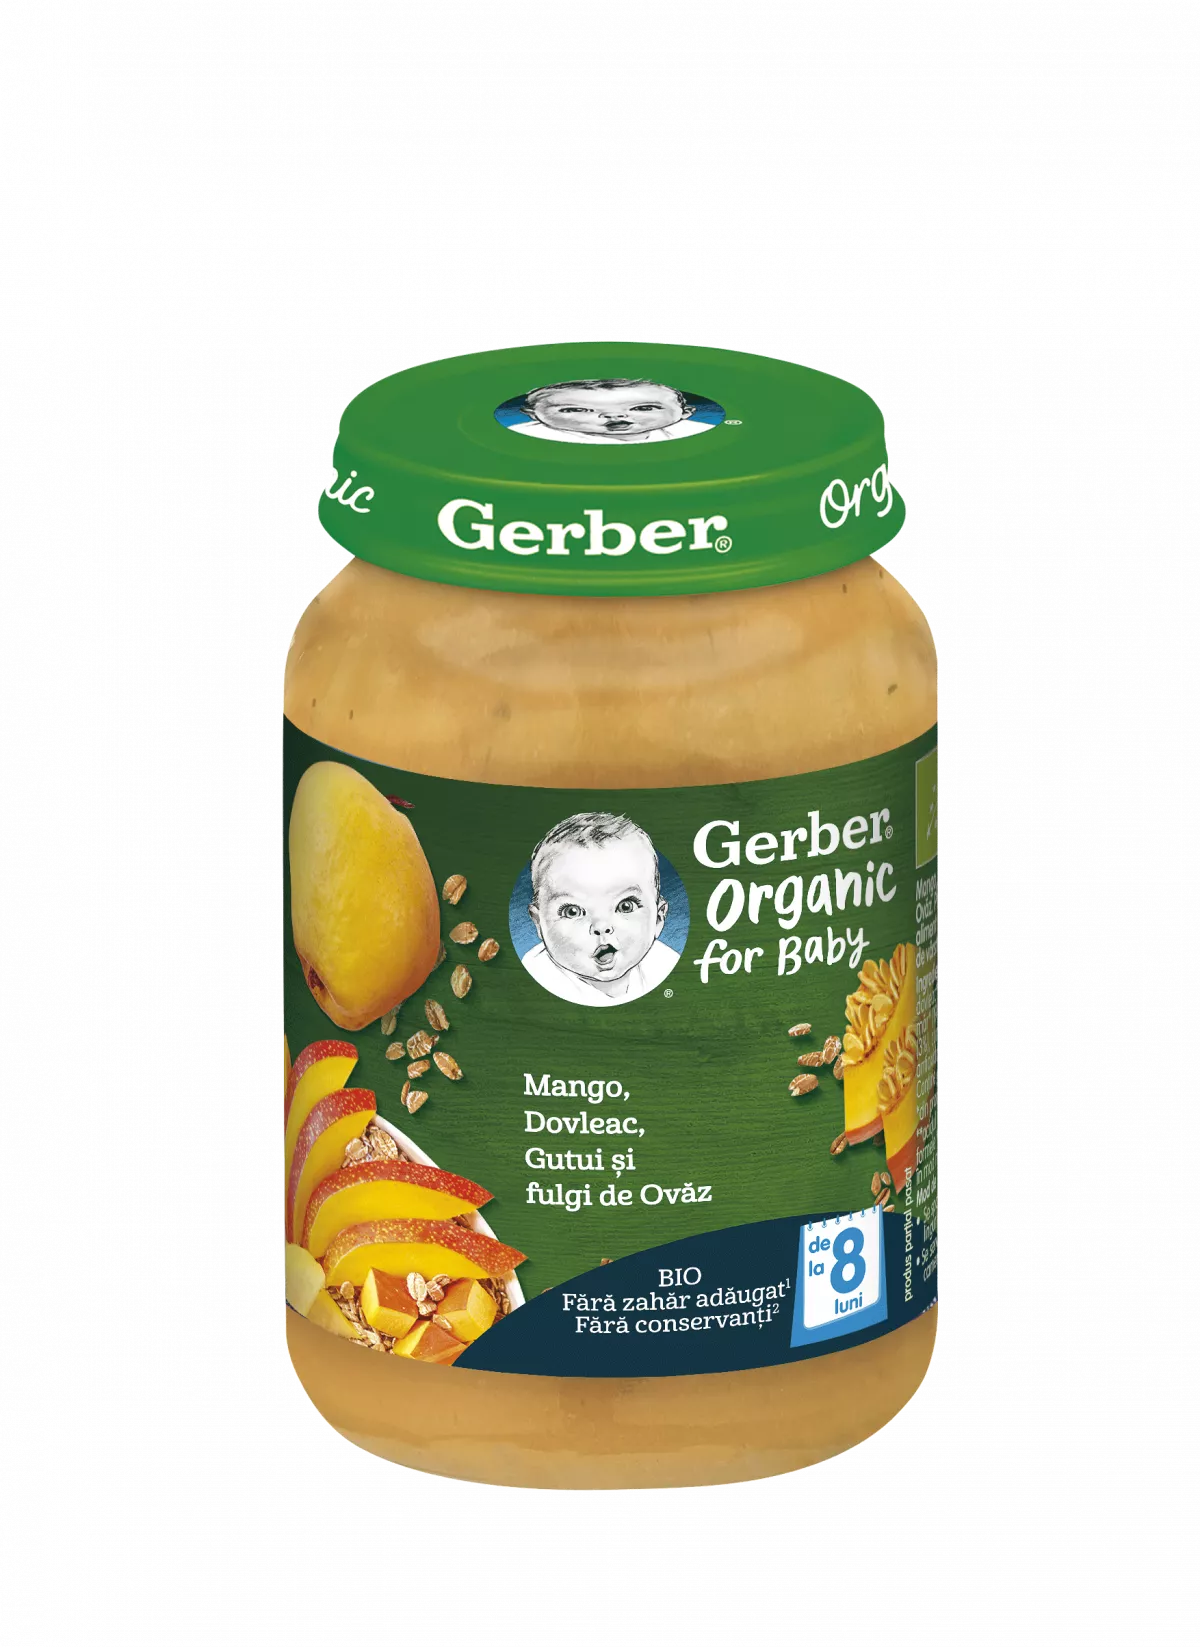 Nestle Gerber bio mango, dovleac, gutuie si fulgi de ovaz, 190g, de la 8 luni